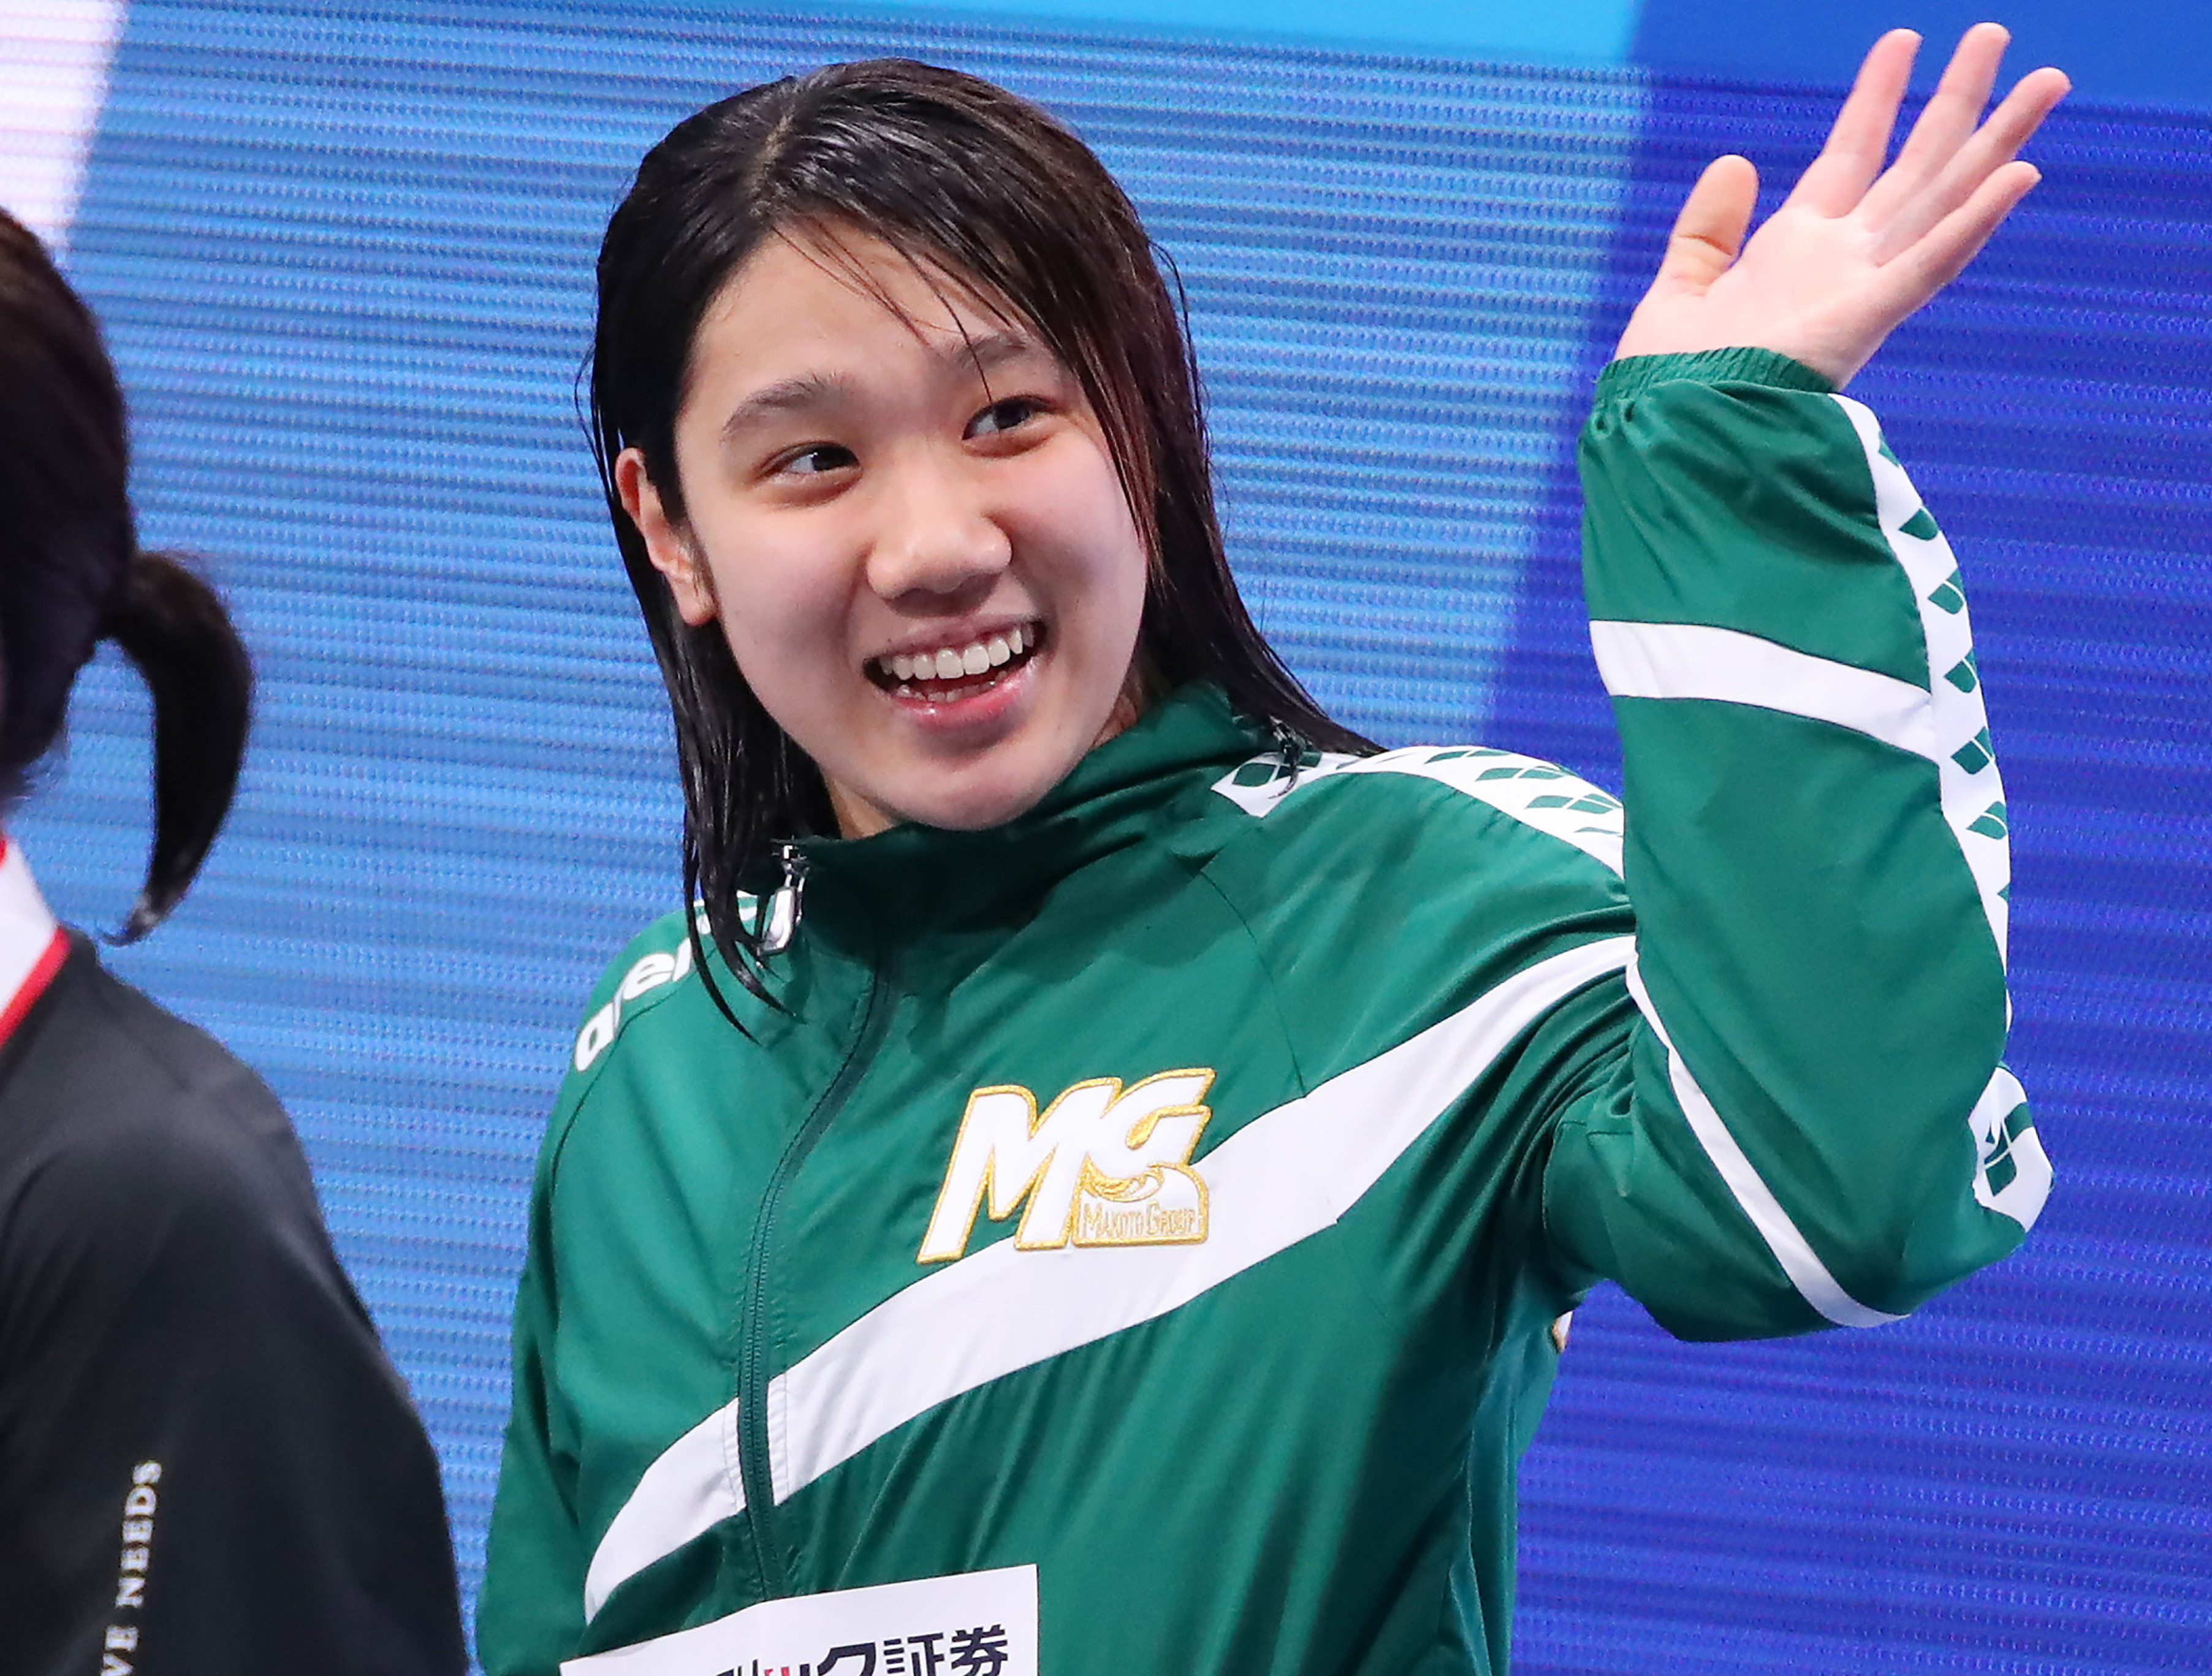 競泳の日本選手権で喜びなき優勝が続出。だが、若手の台頭には期待